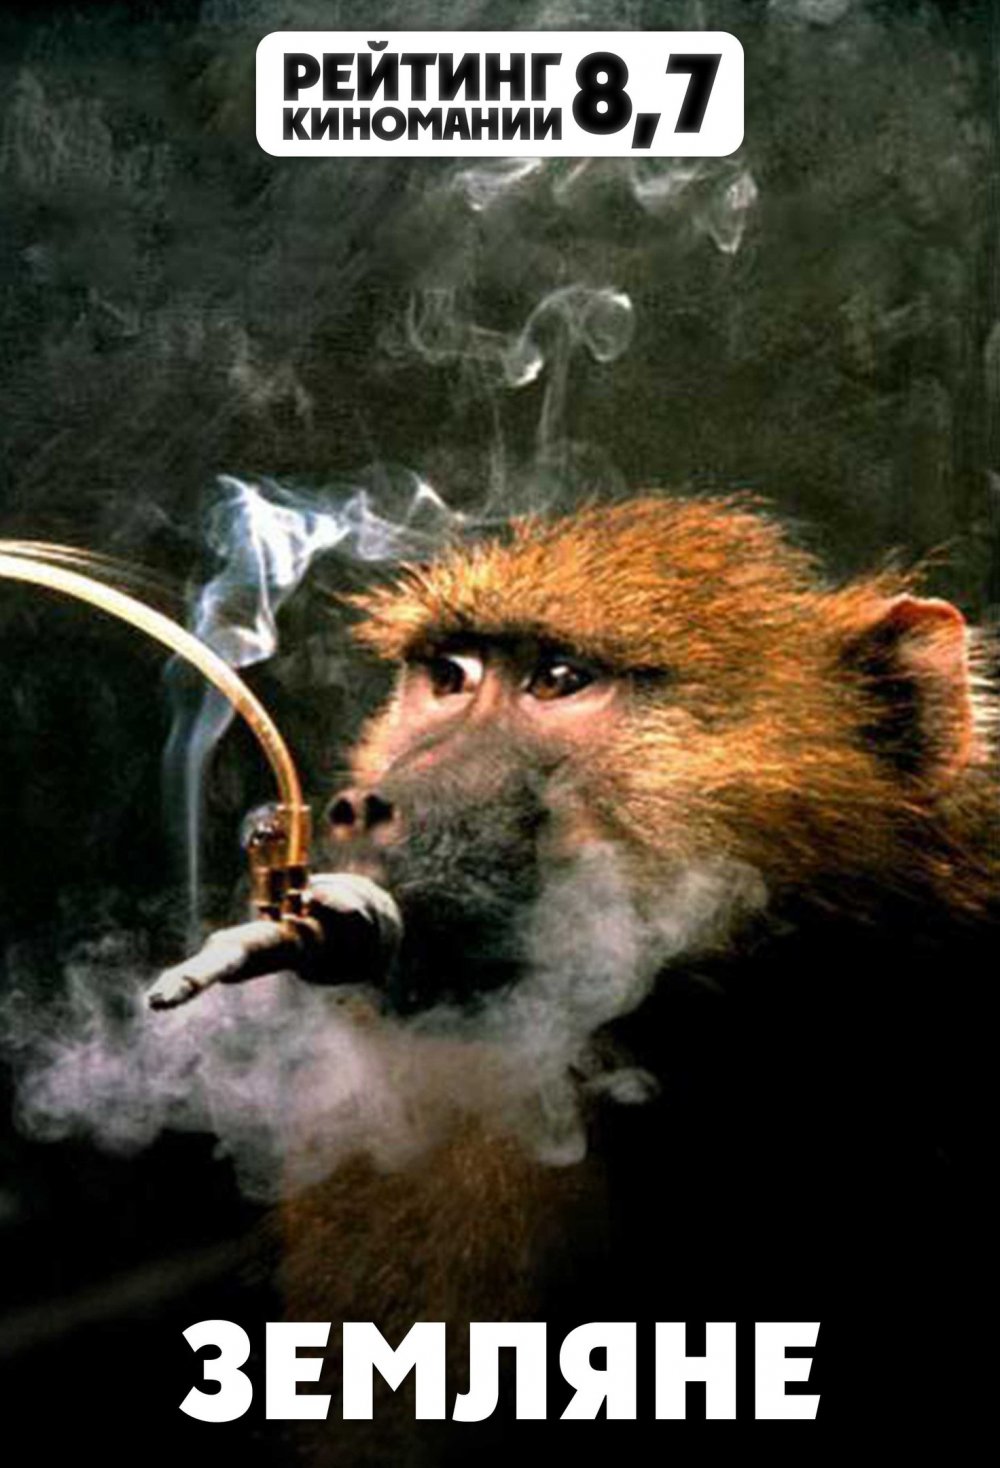 Картина обезьяна с сигарой